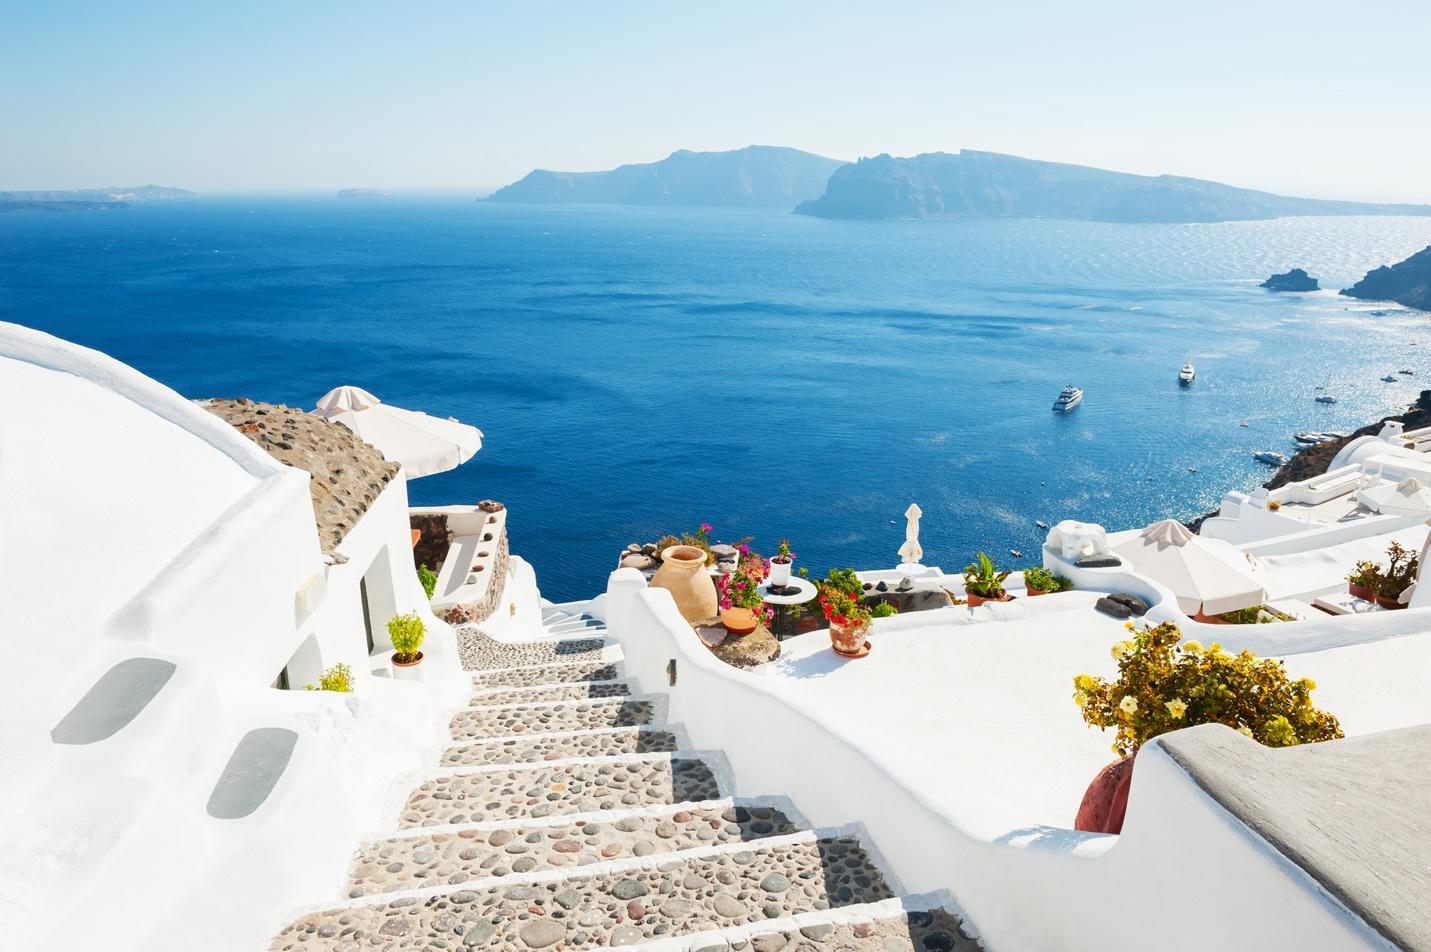 Leuchtend weiße Häuser auf einer griechischen Insel liegen hoch über dem blauen Ozean